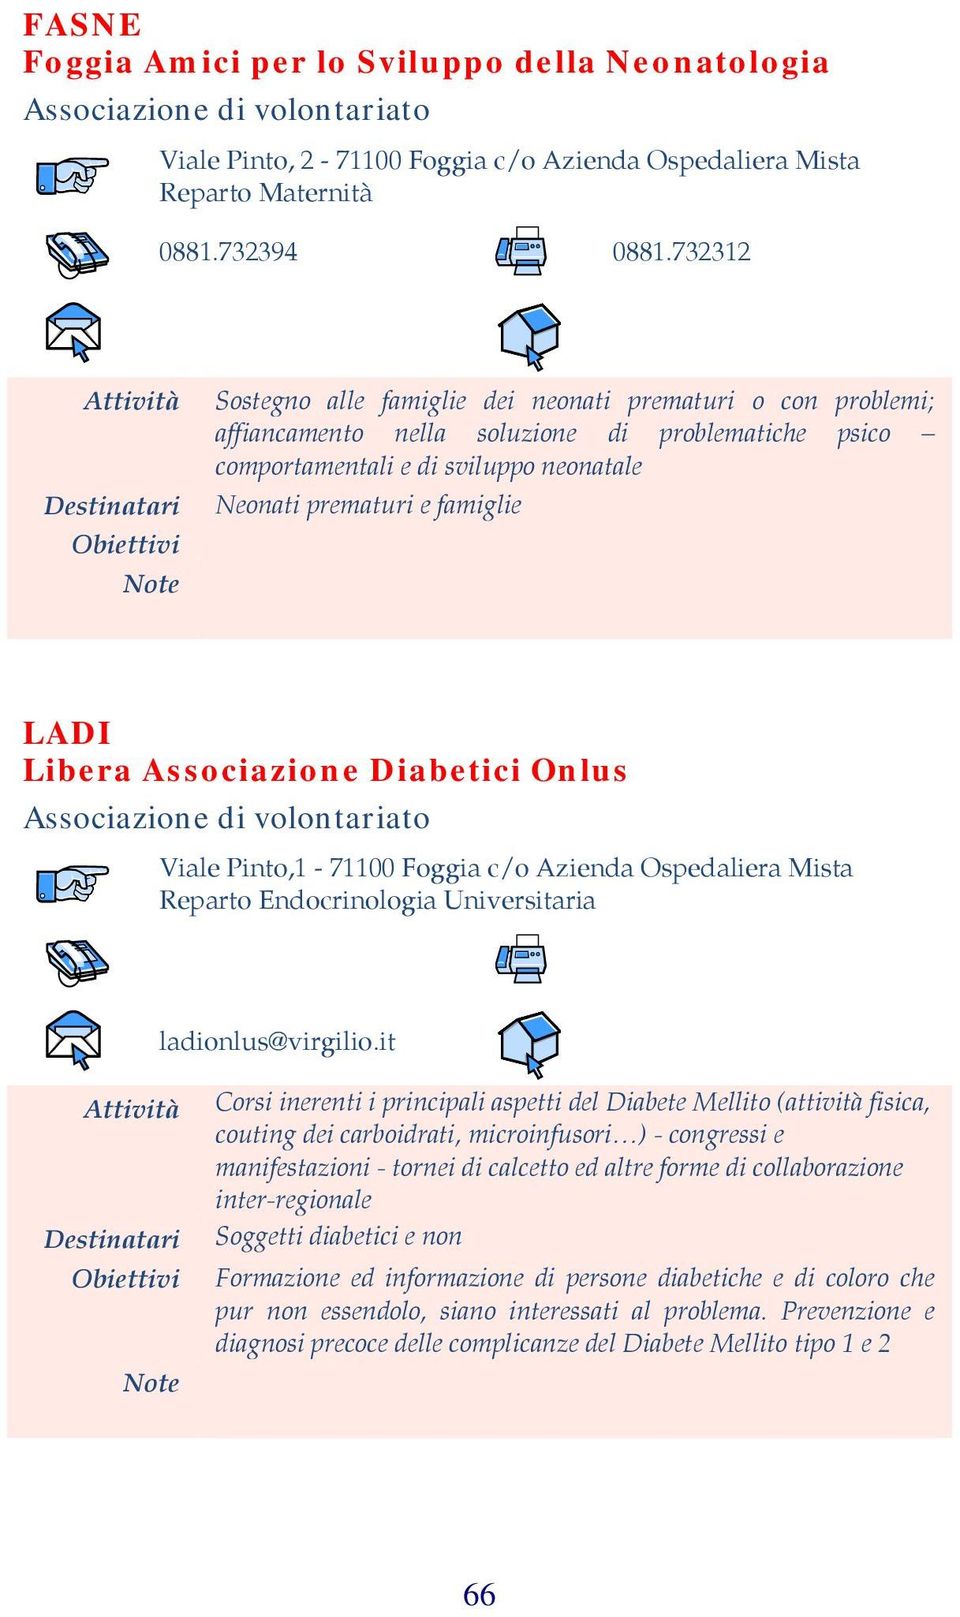 Libera Associazione Diabetici Onlus Associazione di Viale Pinto,1-71100 Foggia c/o Azienda Ospedaliera Mista Reparto Endocrinologia Universitaria ladionlus@virgilio.